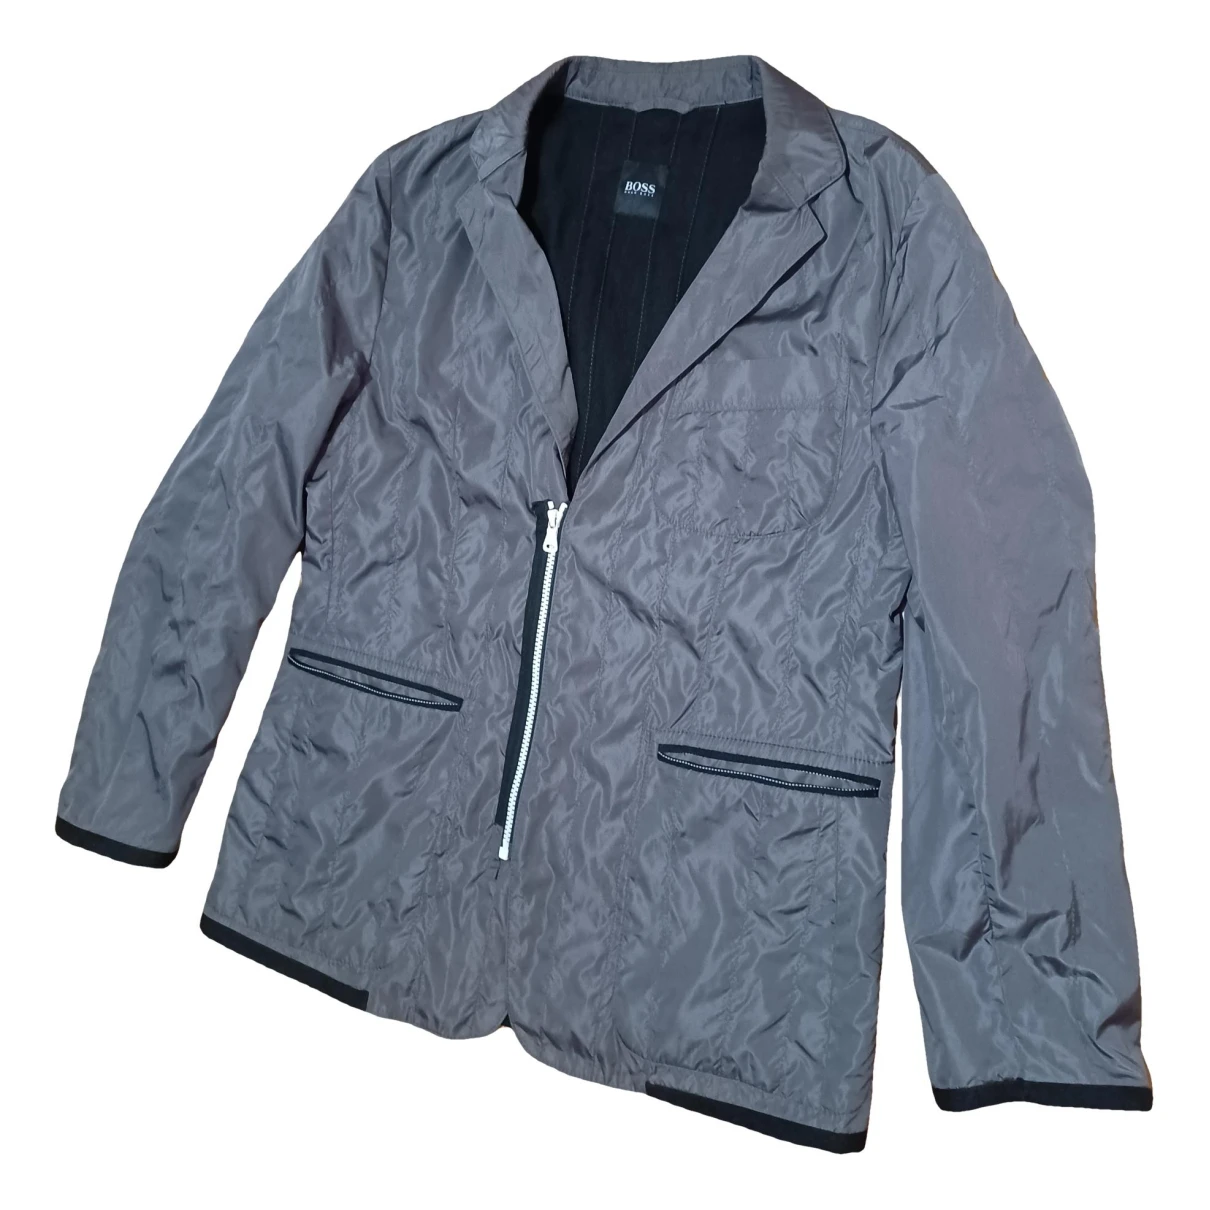 Pre-owned Hugo Boss Jacket In Grey